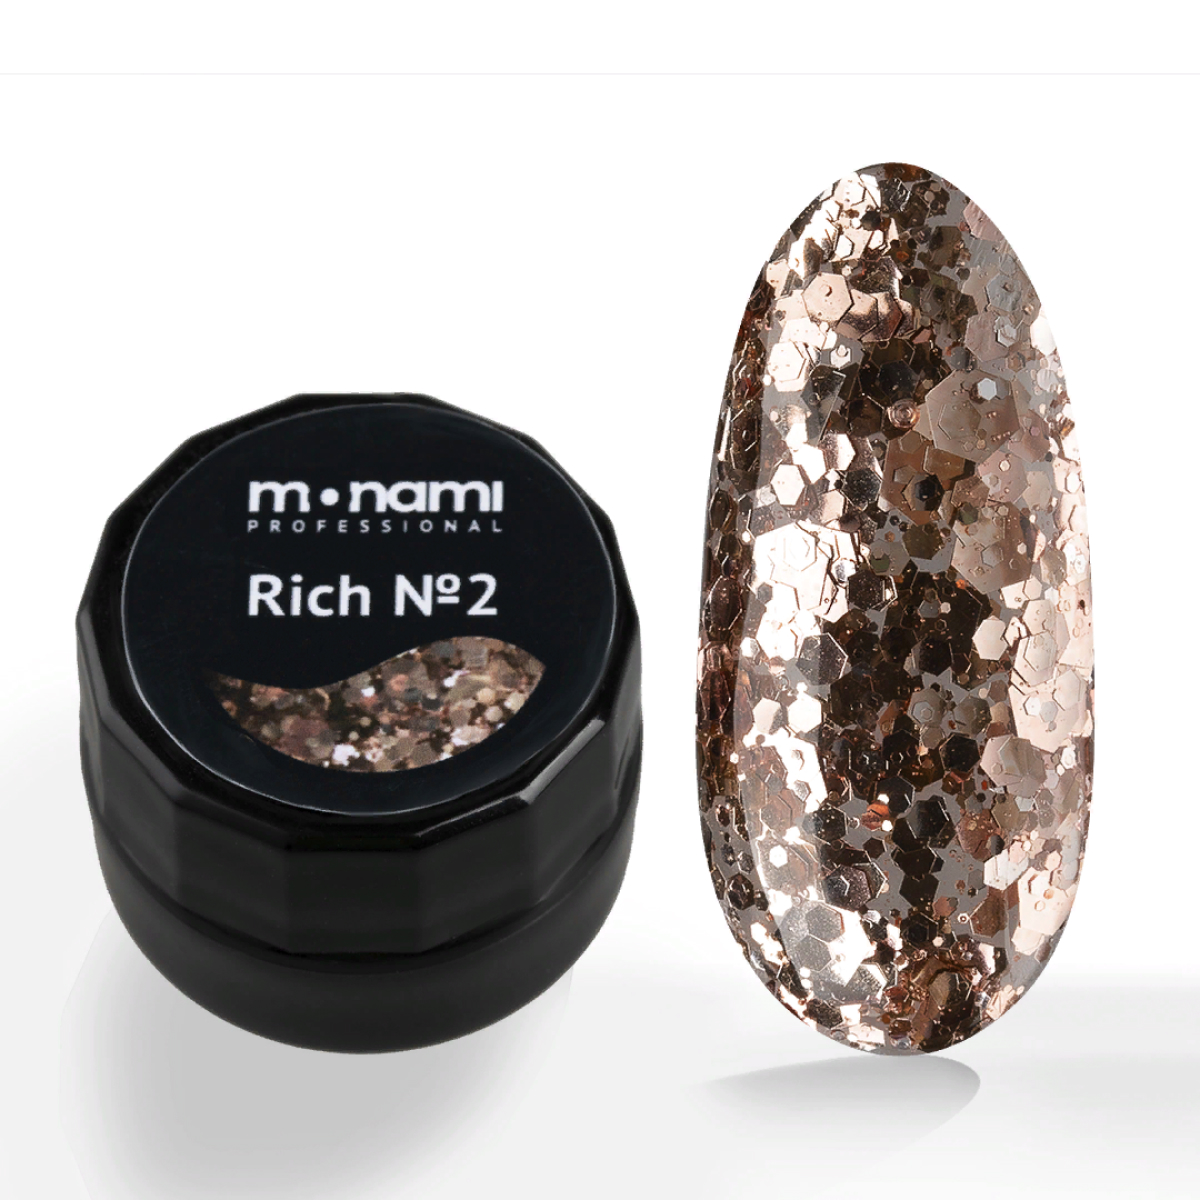 Гель-лак для ногтей Monami Rich с бронзовыми блестками разного размера №2, 5 мл серебряные осколки